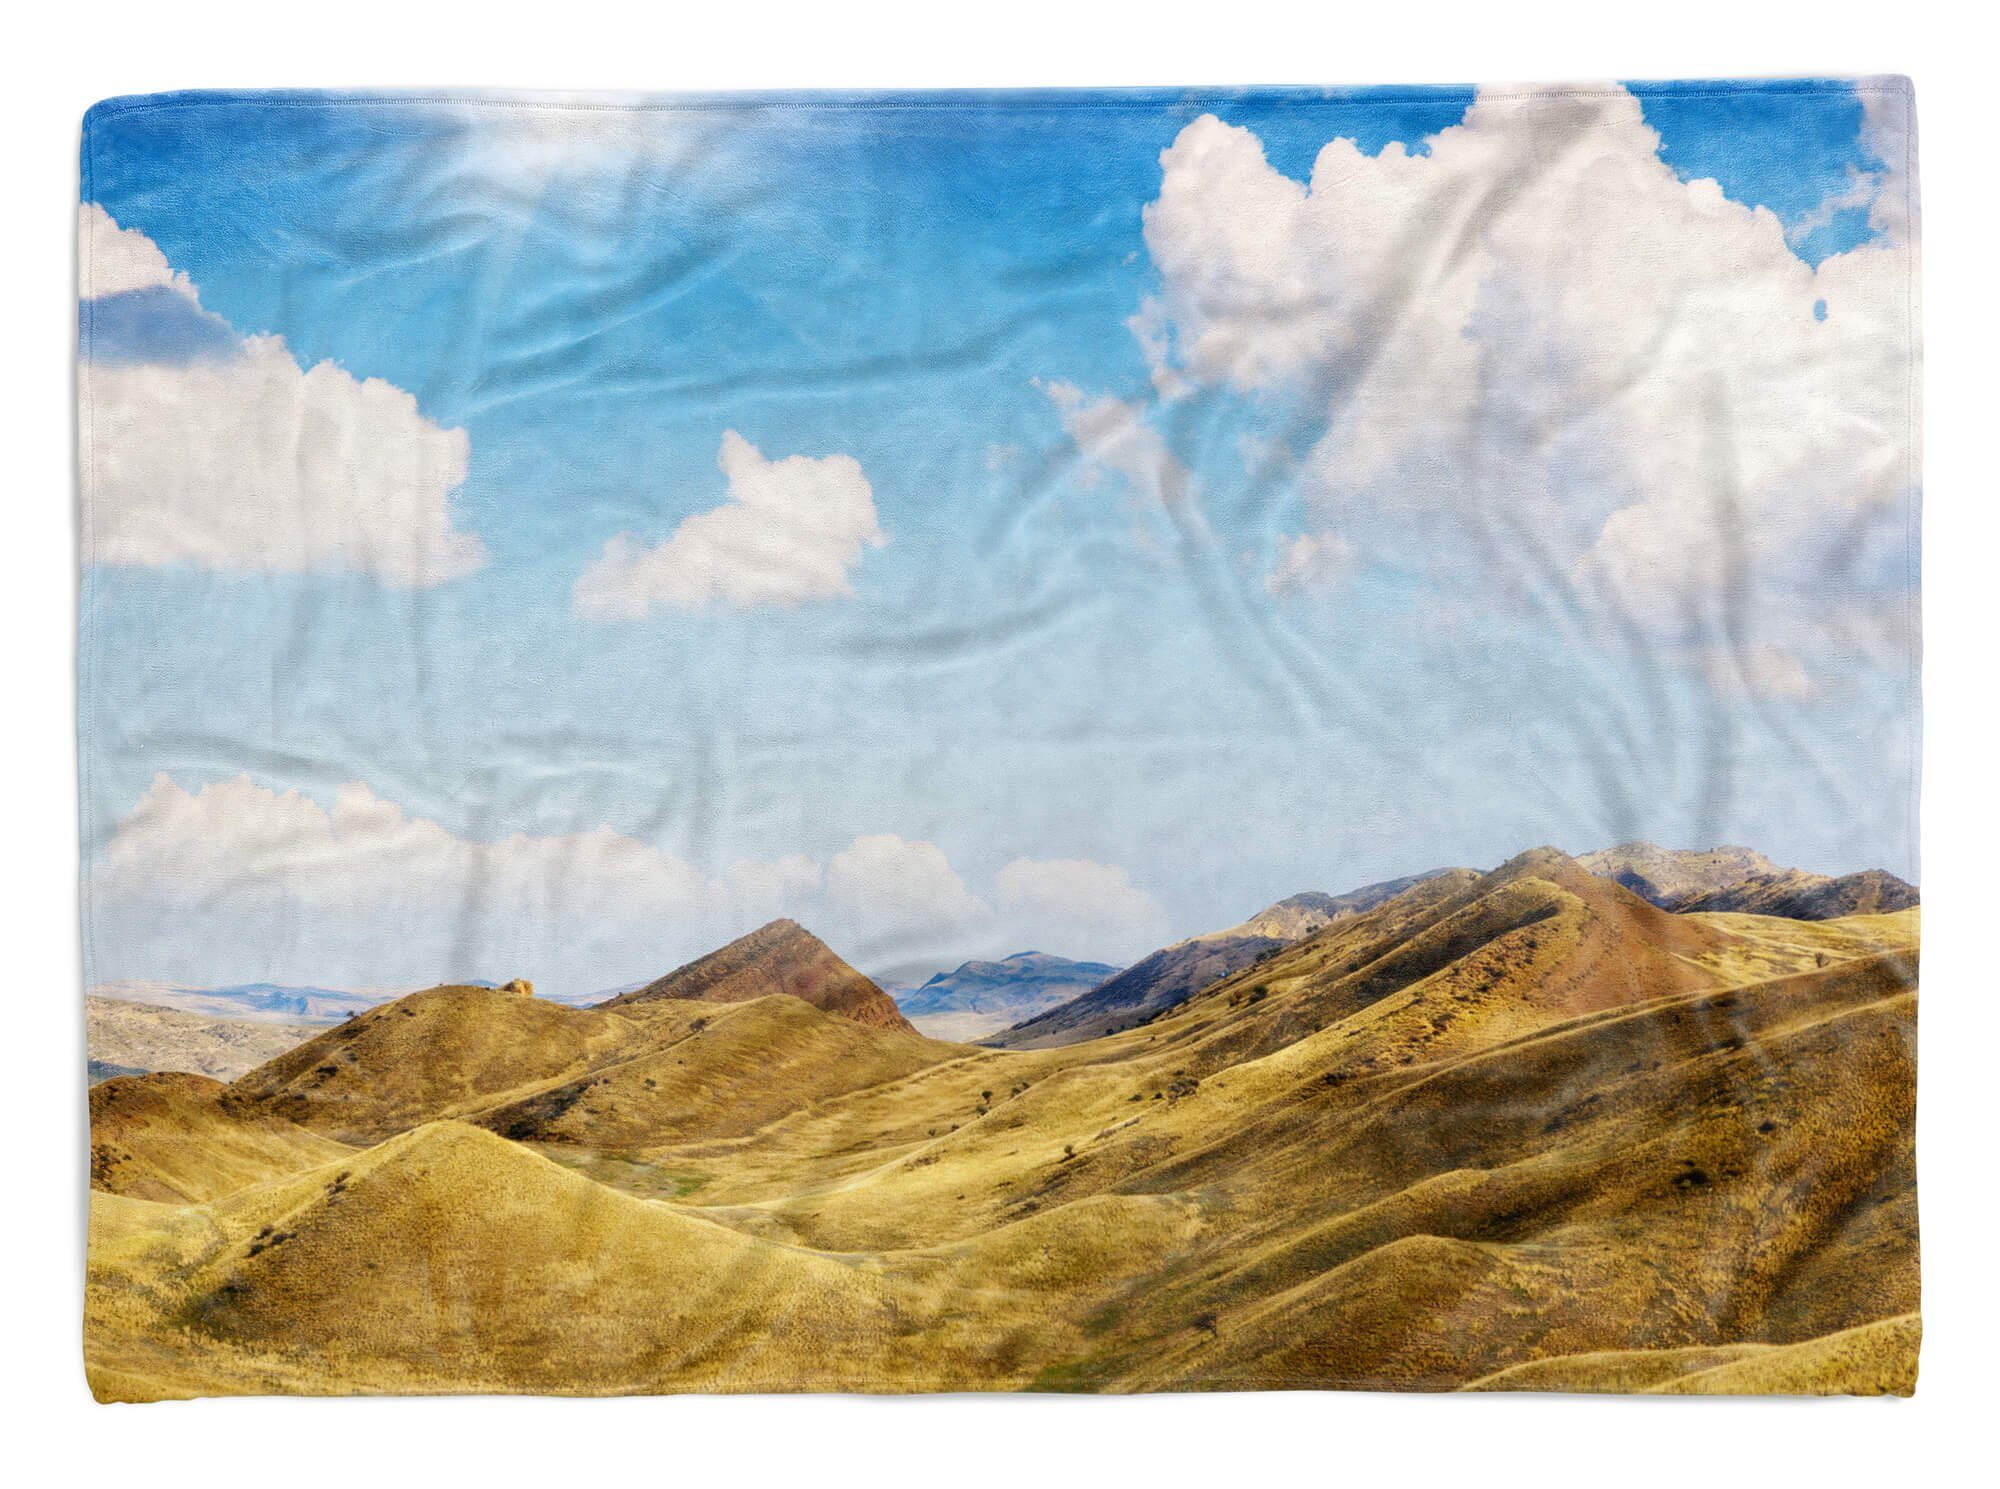 Handtuch Fotomotiv Handtücher Schön, (1-St), Baumwolle-Polyester-Mix Art Strandhandtuch Sinus Saunatuch Berge Anden Handtuch mit Kuscheldecke